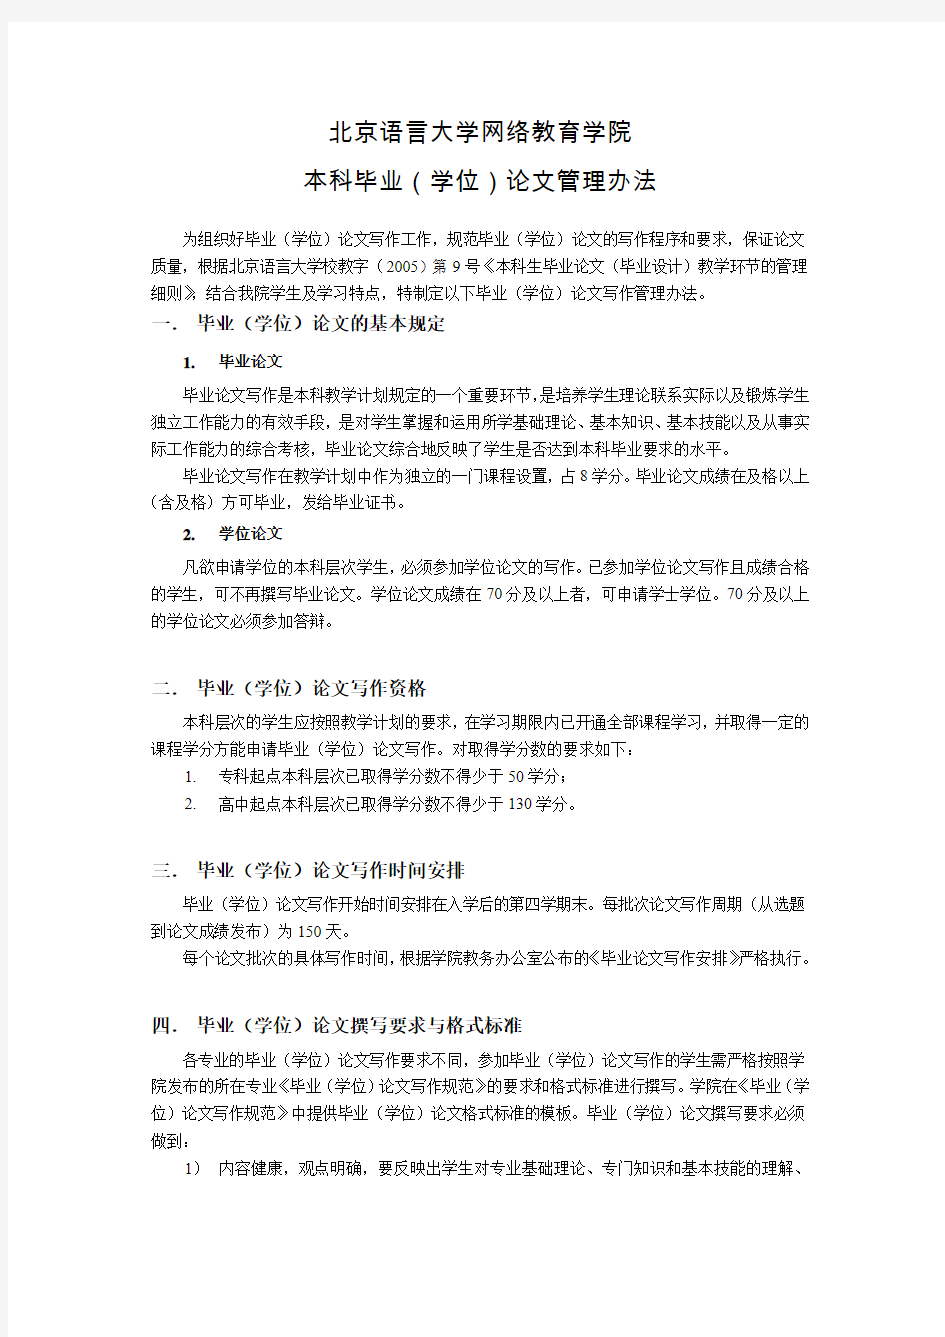 北京语言大学网络教育学院本科毕业(学位)论文管理办法